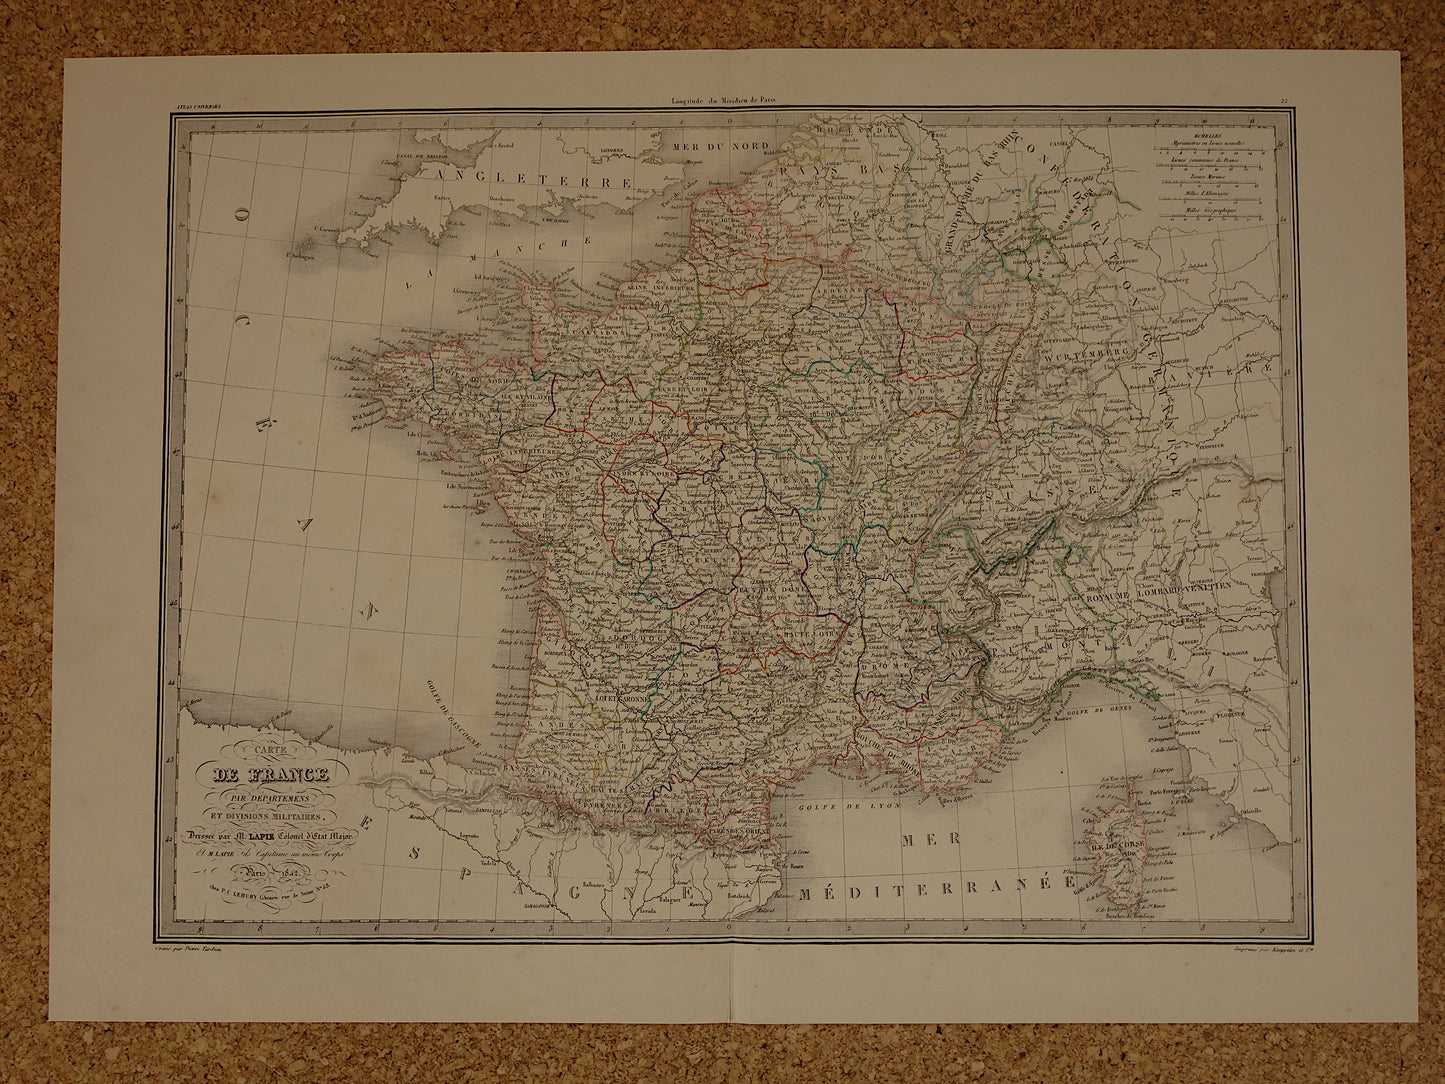 FRANKRIJK grote oude Franse kaart van Frankrijk in 1829 originele antieke handgekleurde landkaart poster